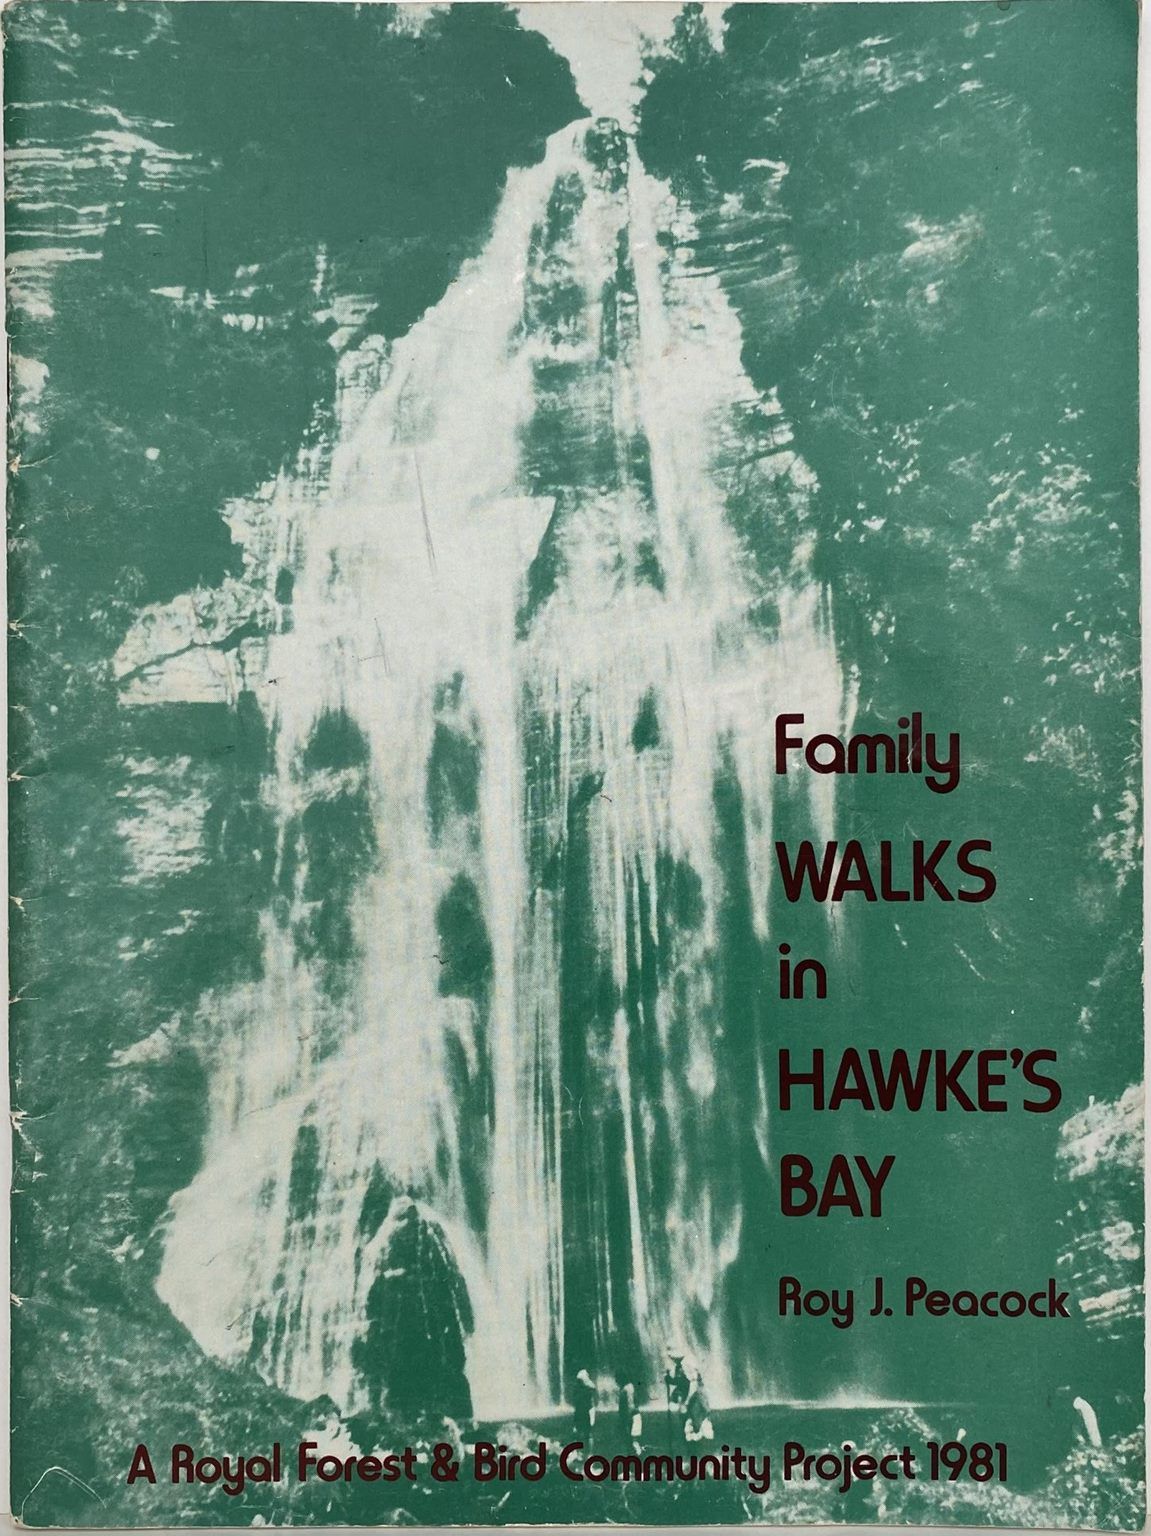 FAMILY WALKS in HAWKE'S BAY